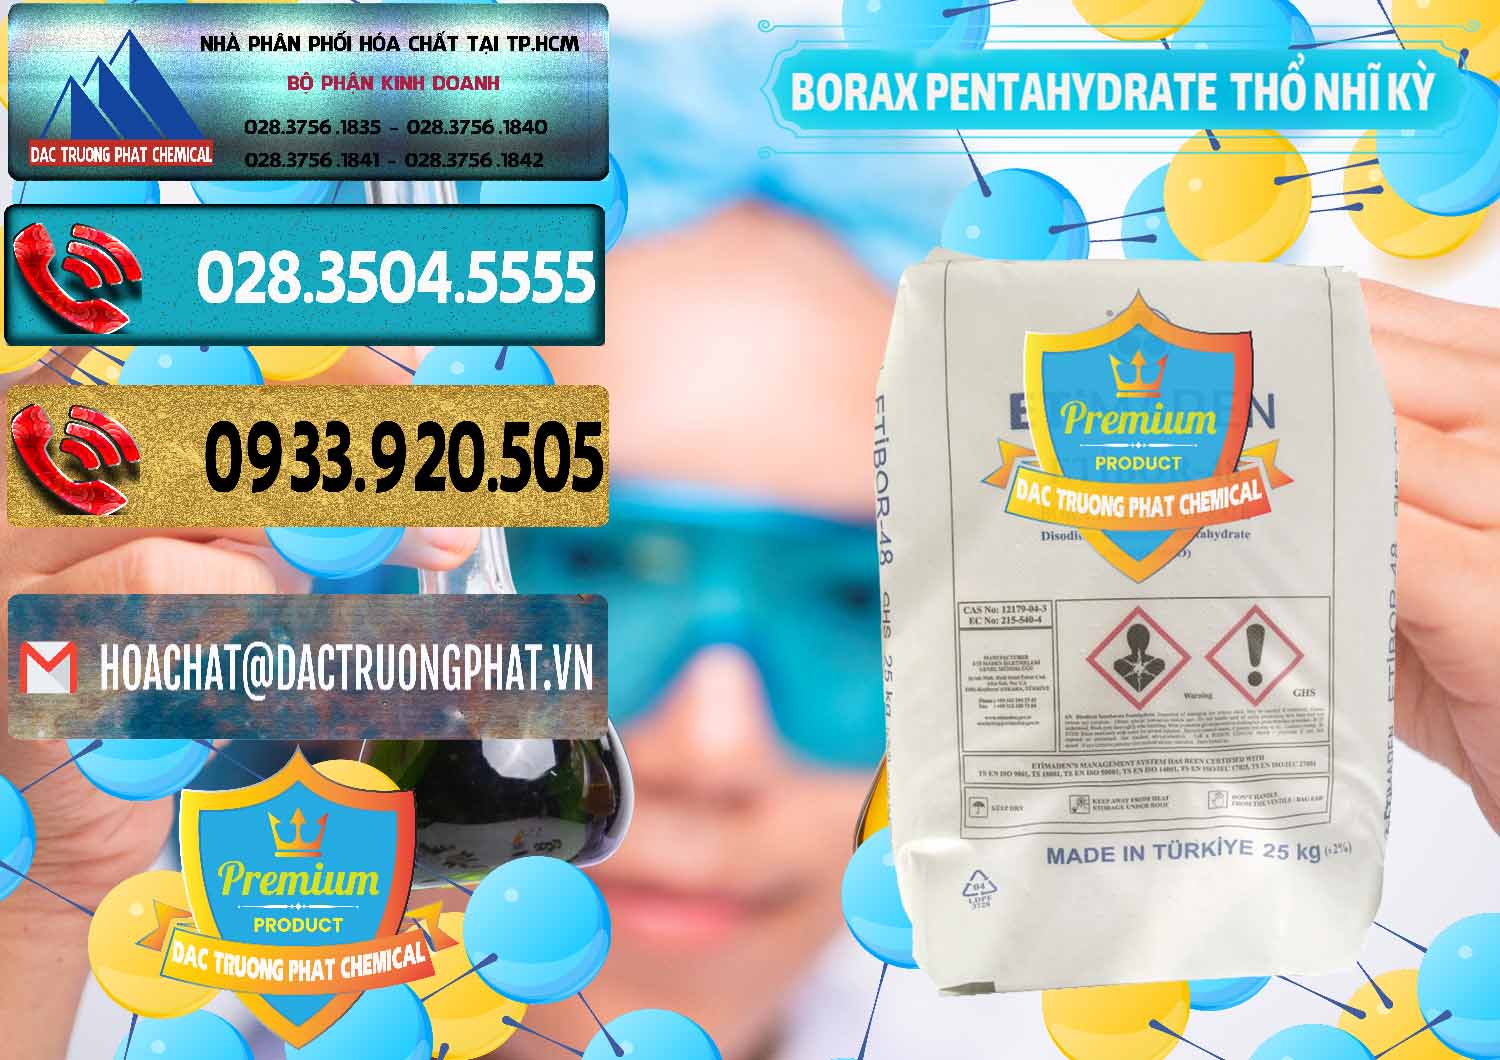 Đơn vị chuyên bán ( phân phối ) Borax Pentahydrate Thổ Nhĩ Kỳ Turkey - 0431 - Đơn vị chuyên phân phối & bán hóa chất tại TP.HCM - hoachatdetnhuom.com